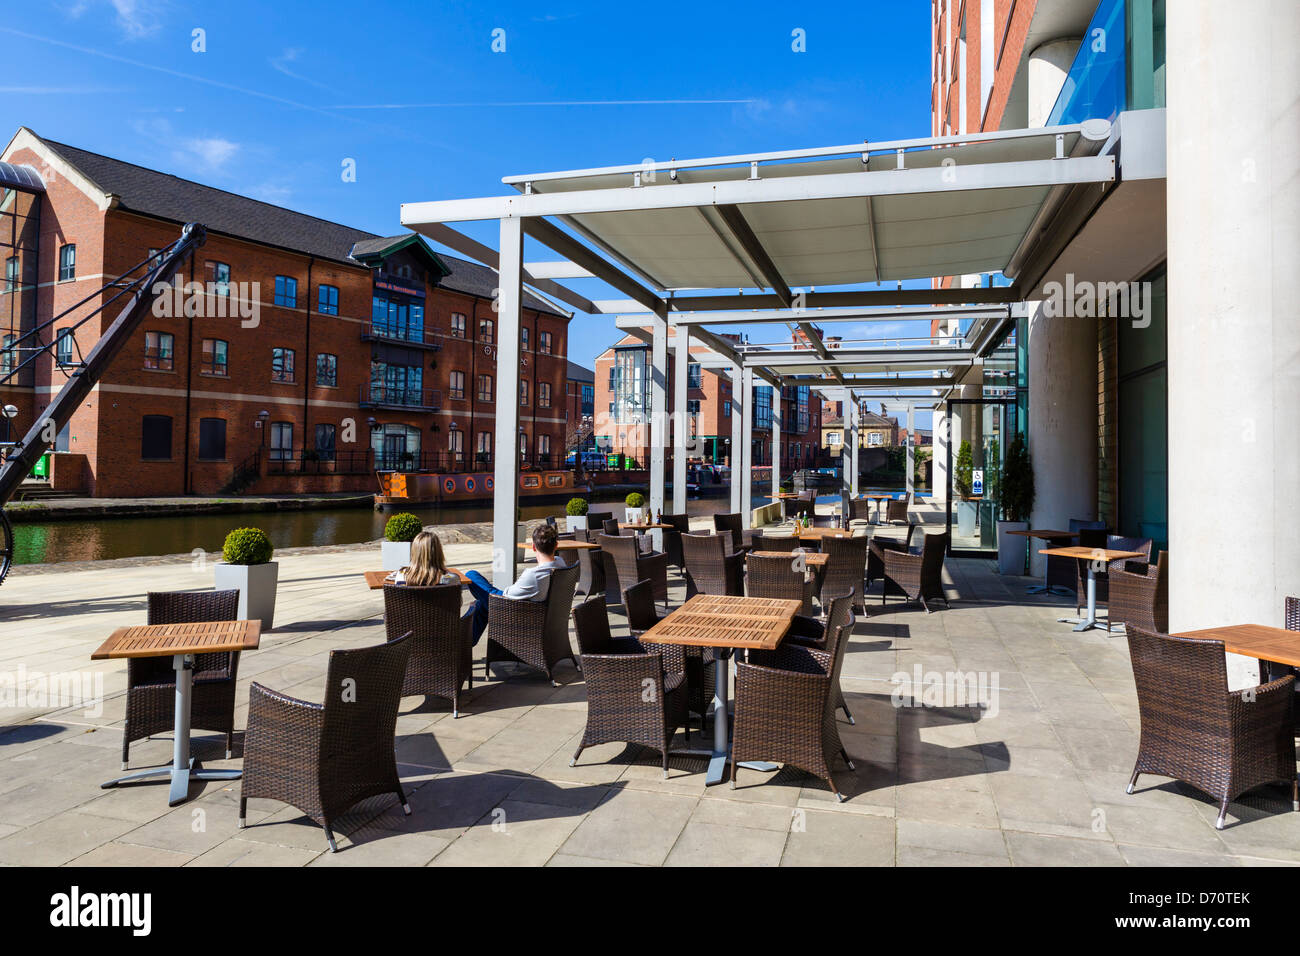 Giovane ubicazione sulla terrazza del Doubletree Hotel affacciato sul canale Leeds-Liverpool, Granary Wharf, Leeds, West Yorkshire, Regno Unito Foto Stock